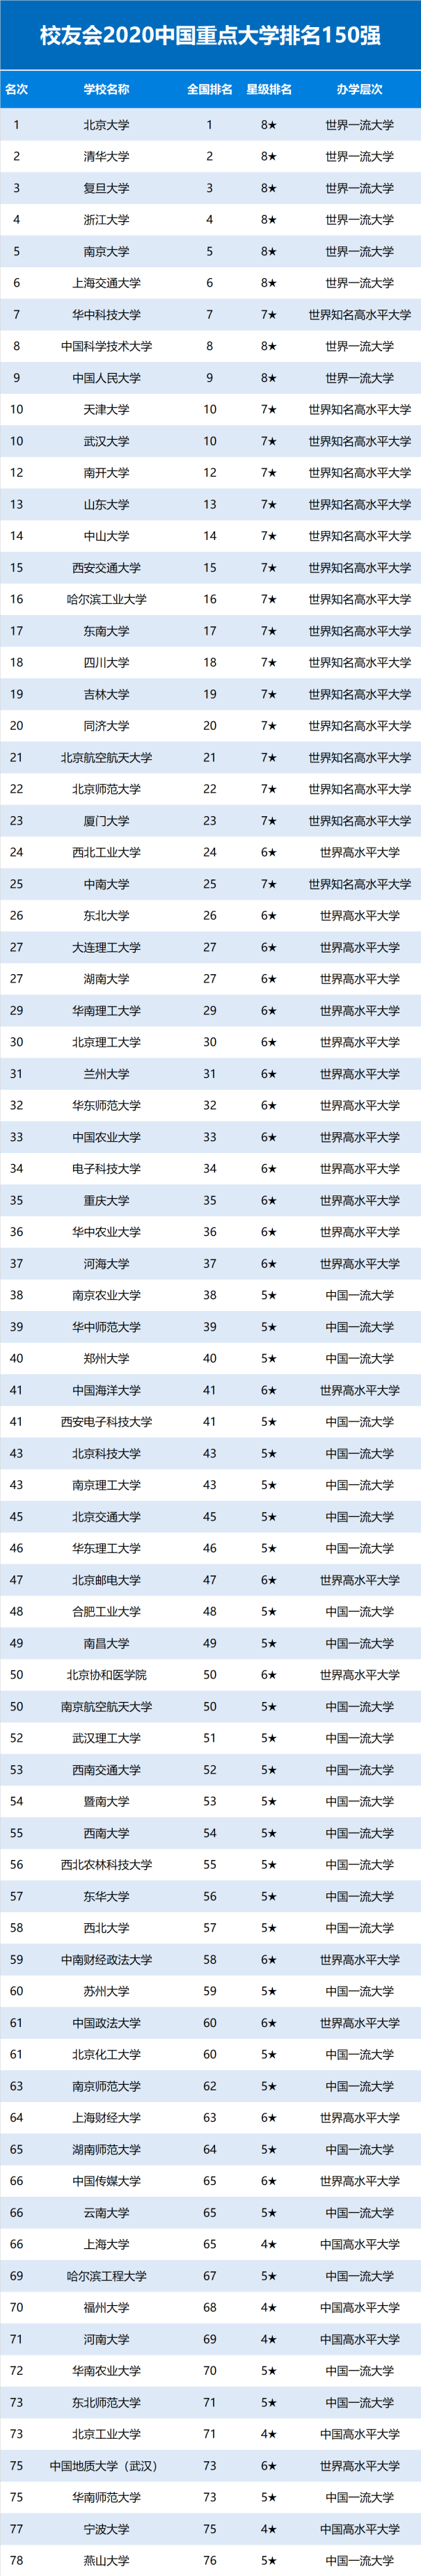 2020中国重点大学排名150强发布 北大清华与复旦名列前三